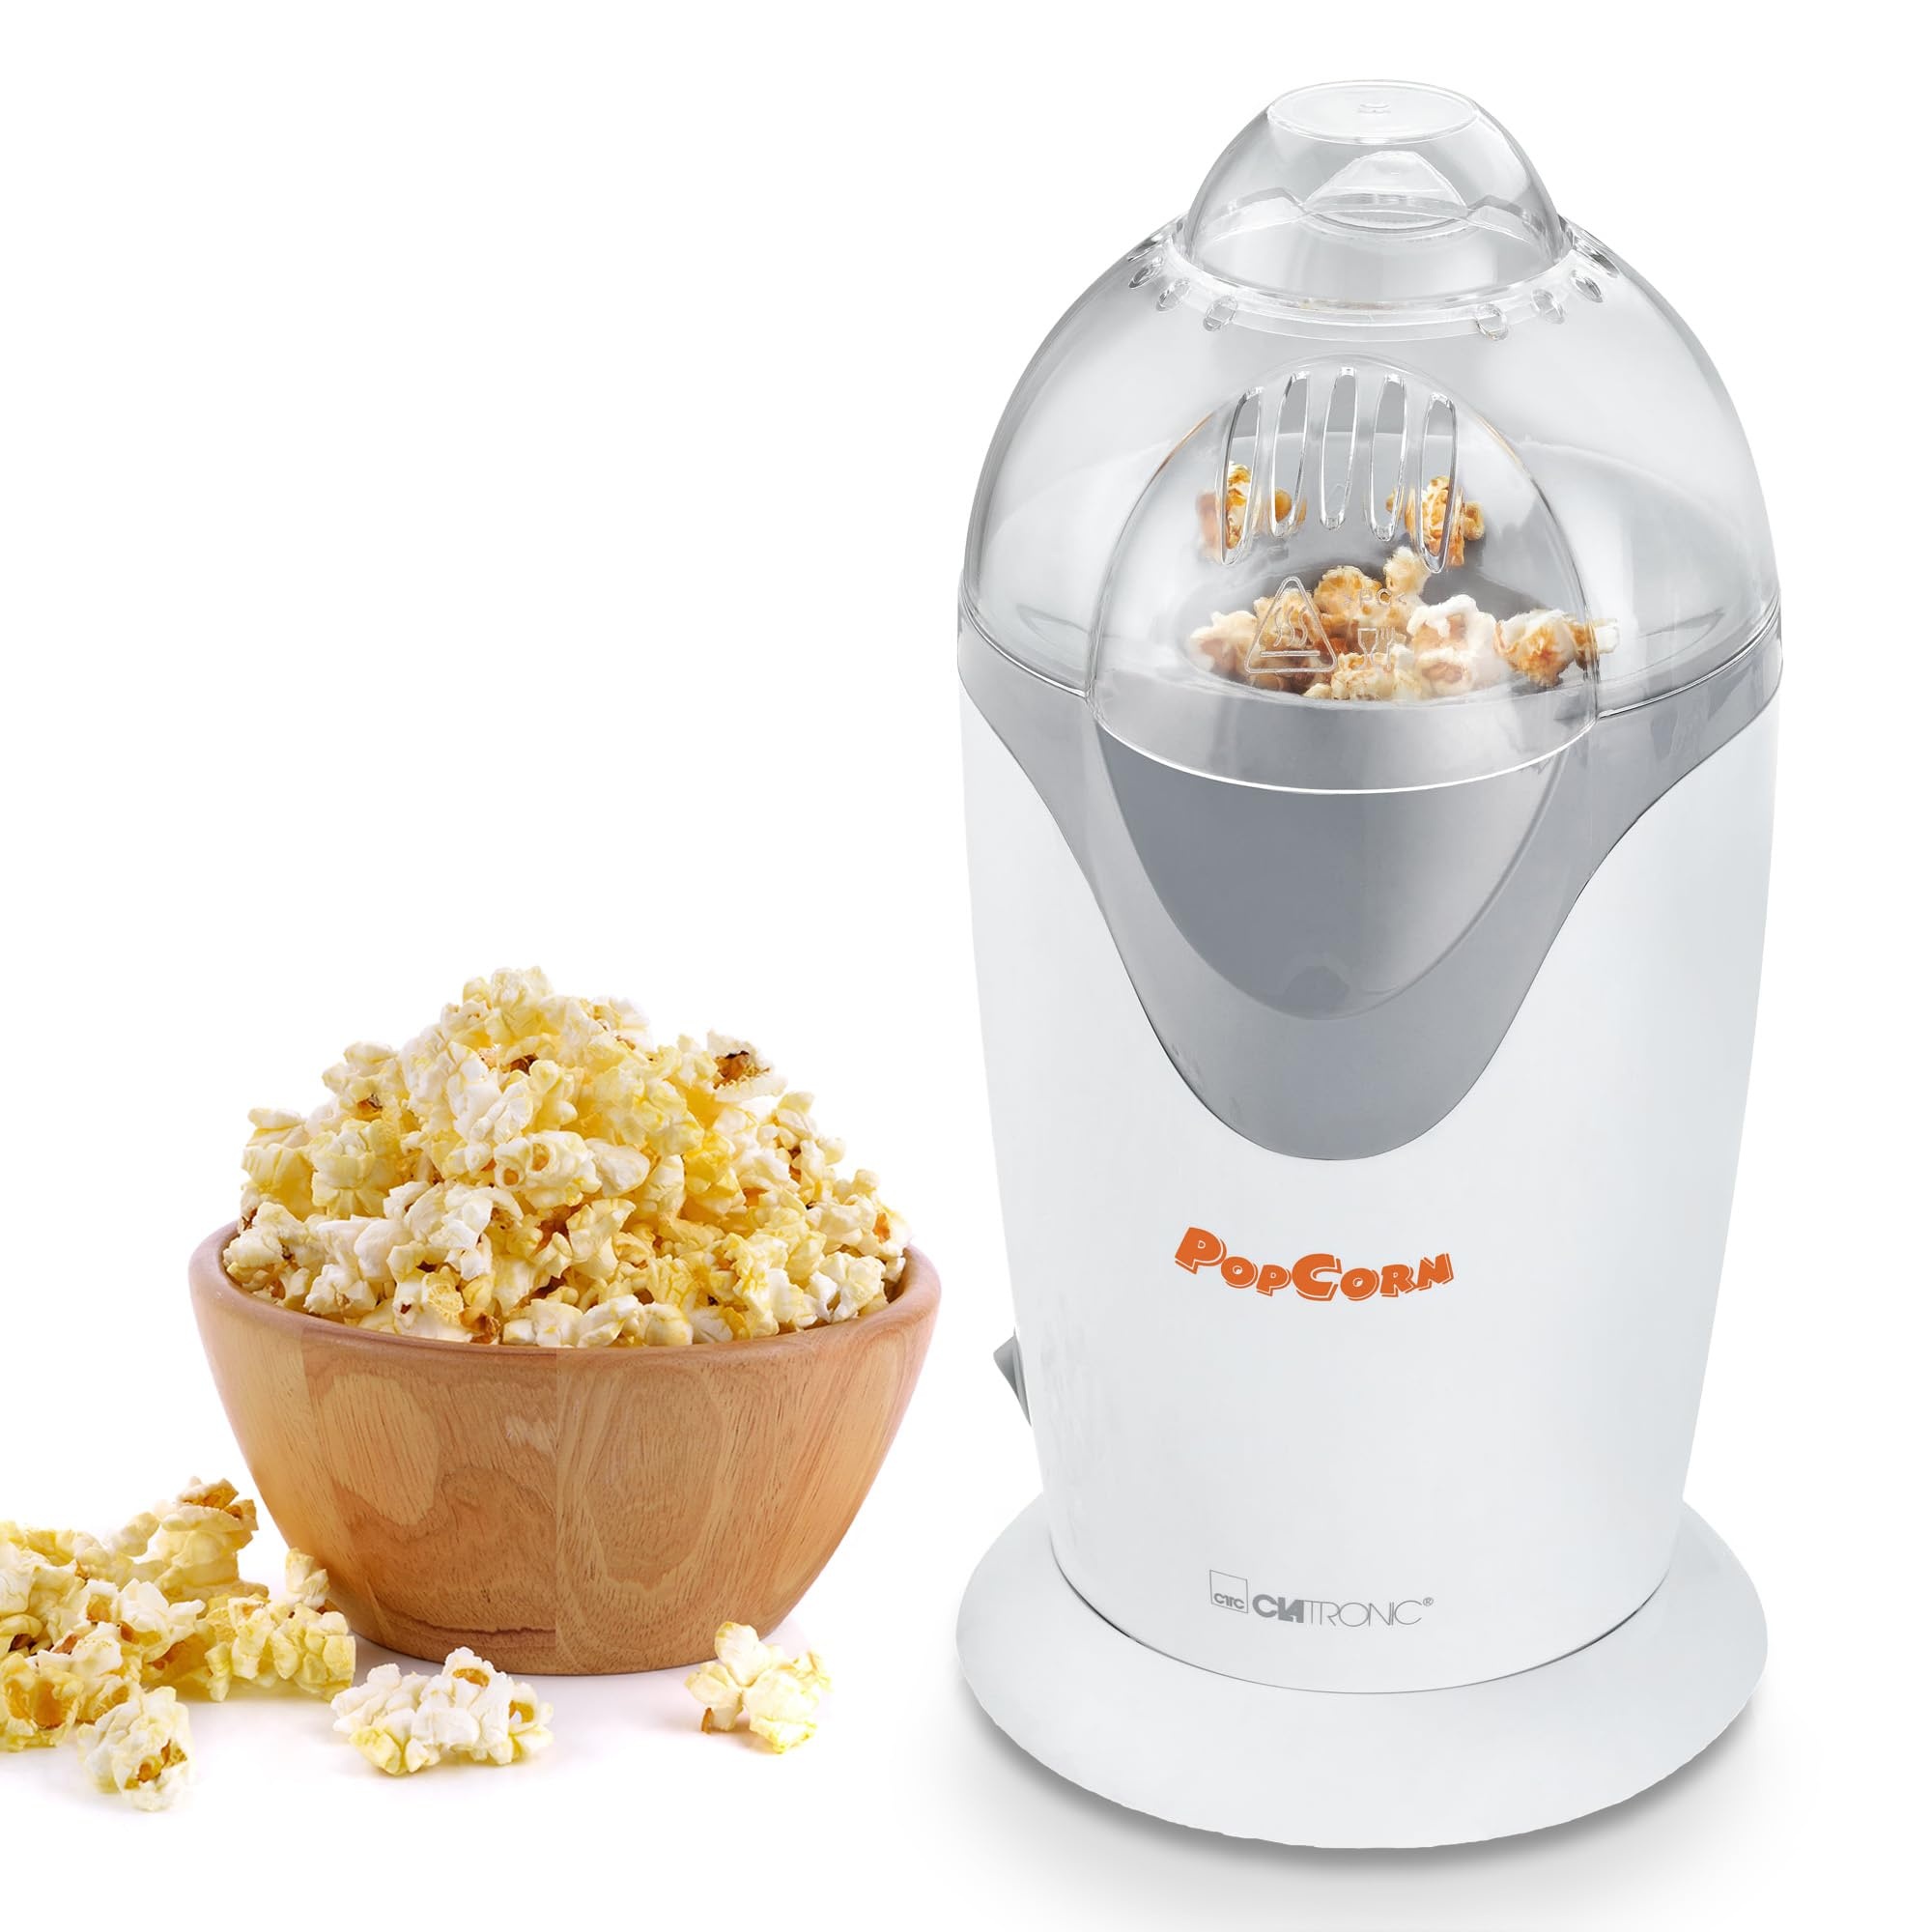 Clatronic Popcorn-Maker | Popcornmaschine für kalorienbewusste Zubereitung | Popcorn Maker für schnellen Genuss | inkl. Portionierschale für Popcorn Mais | PM 3635